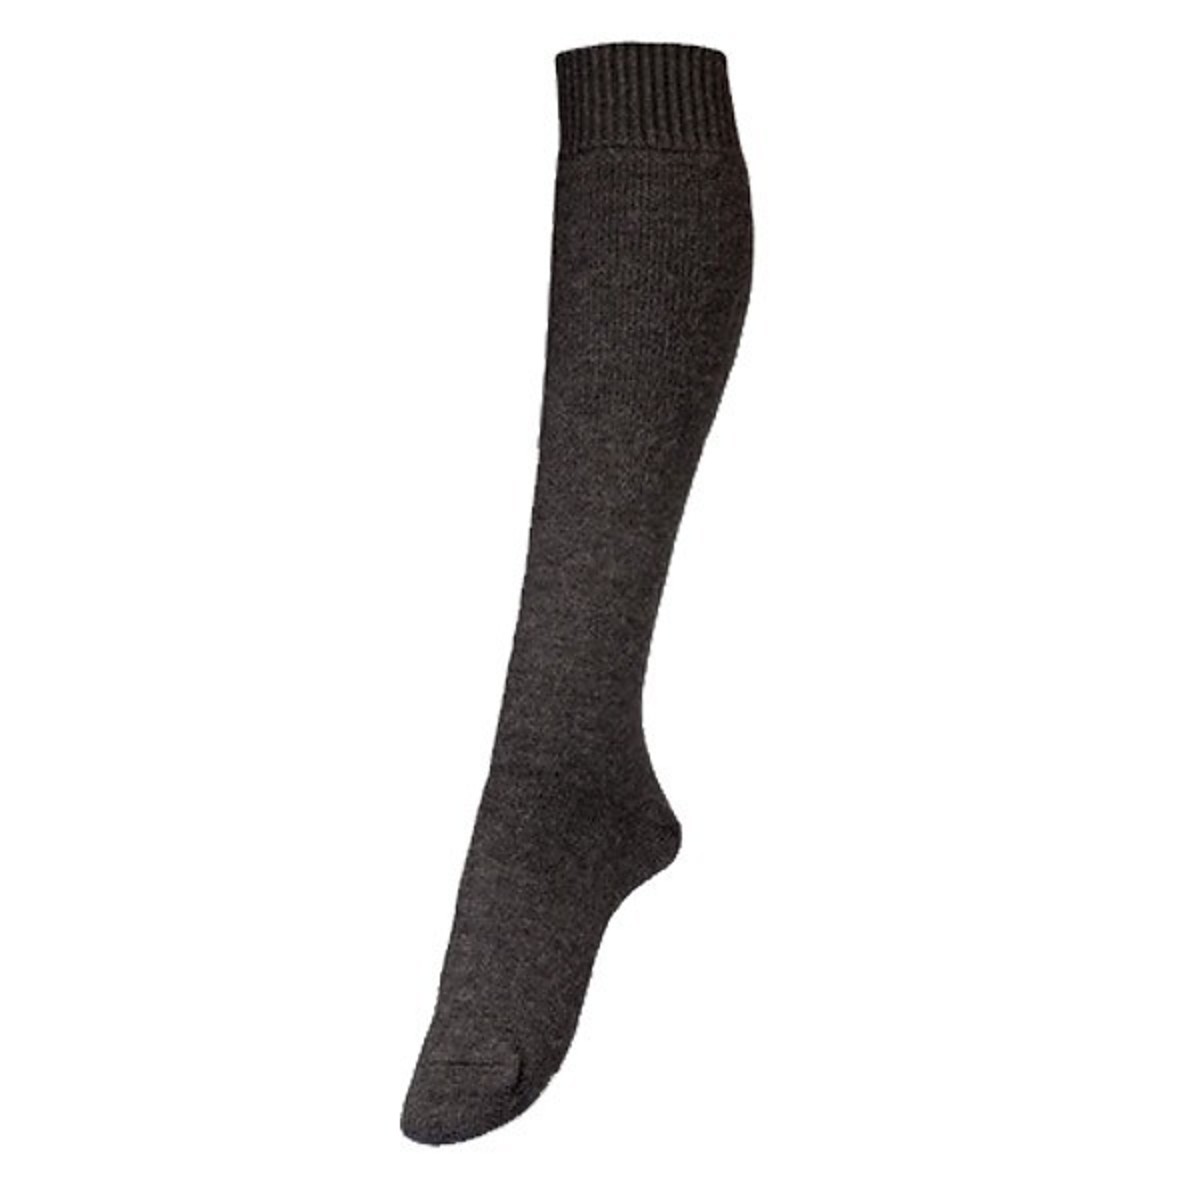 Veith boot socks fully plush knee-length